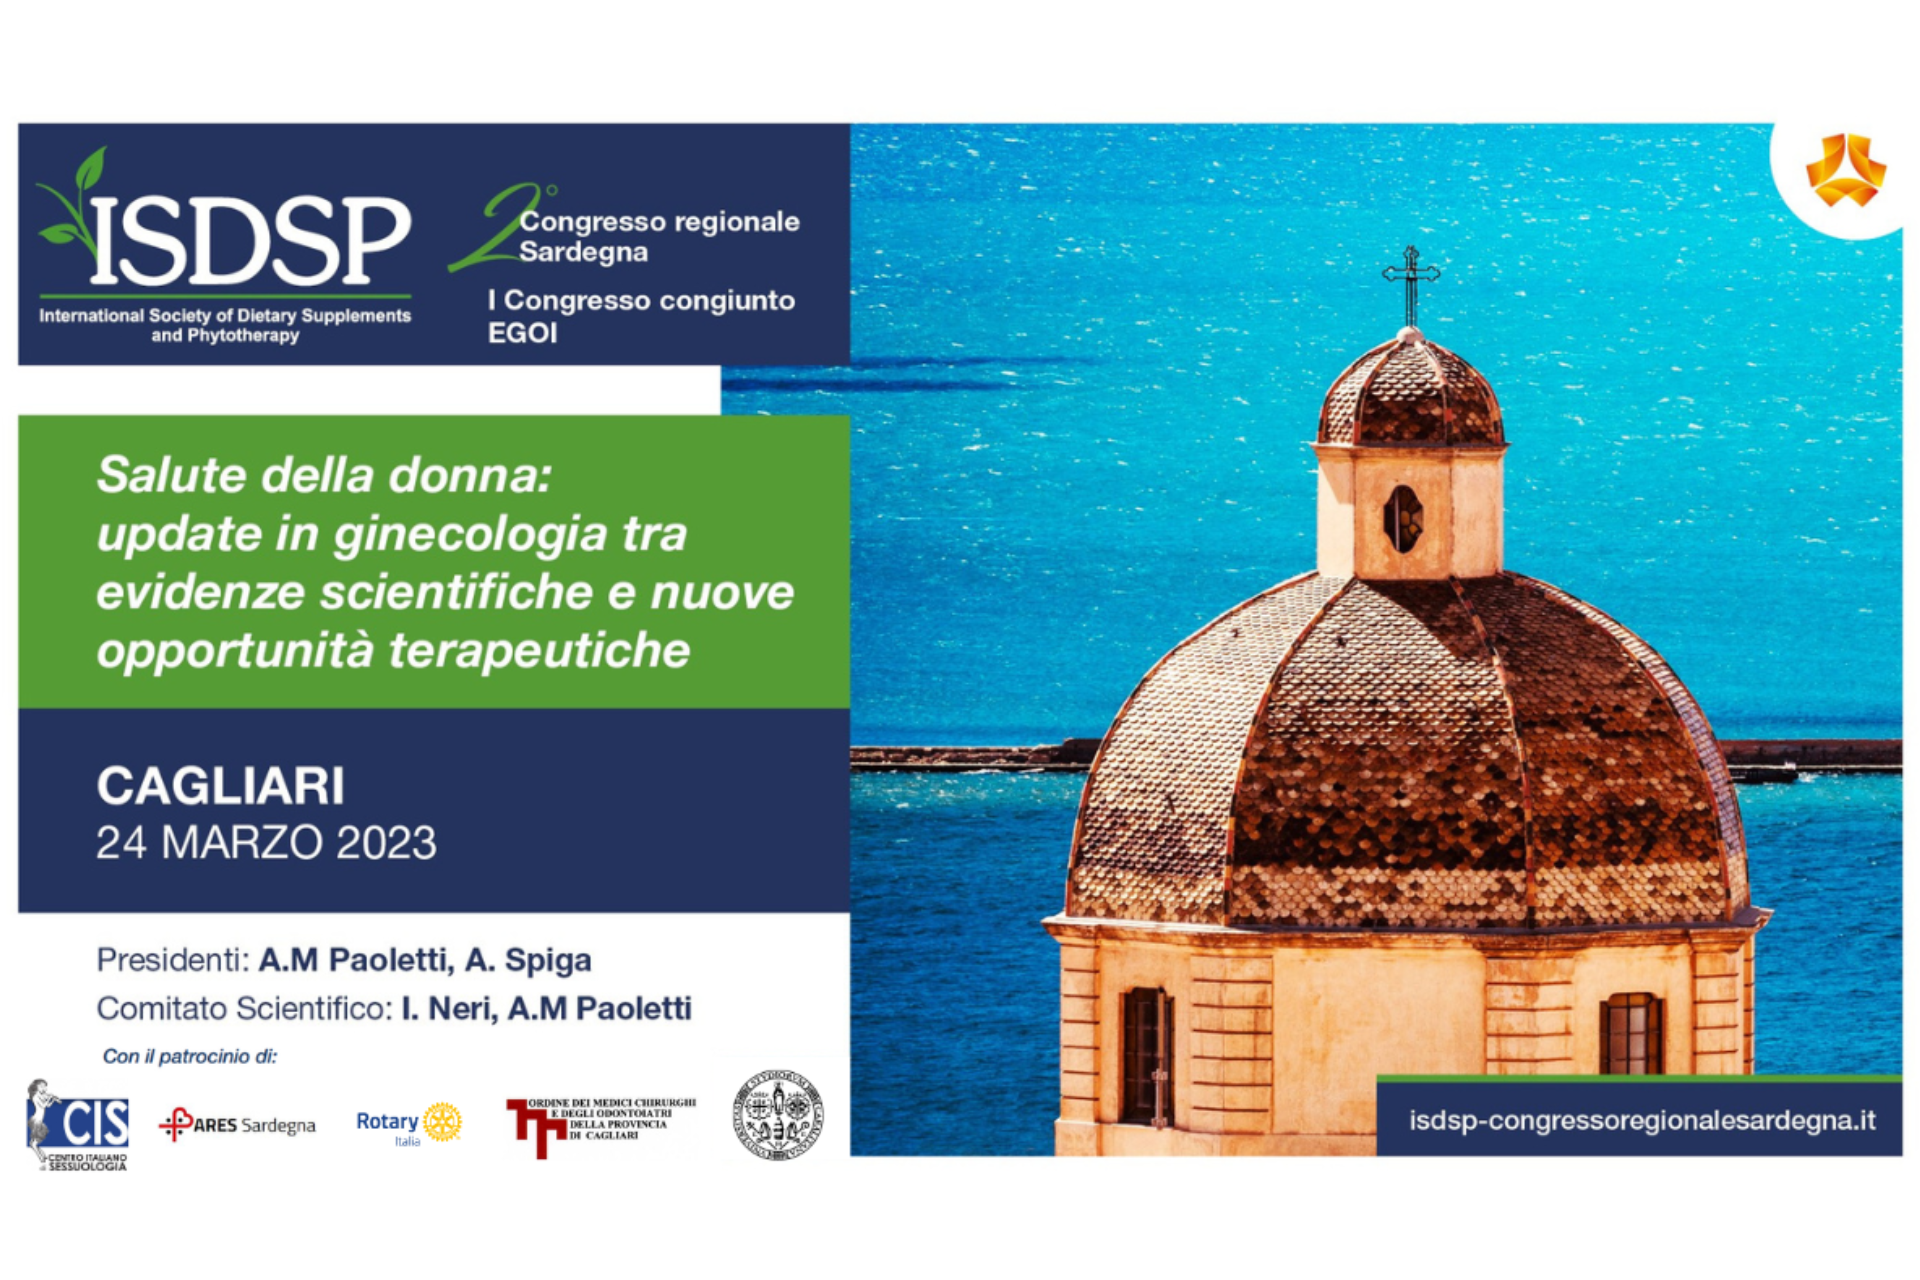 Congresso Regionale Sardegna ISDSP